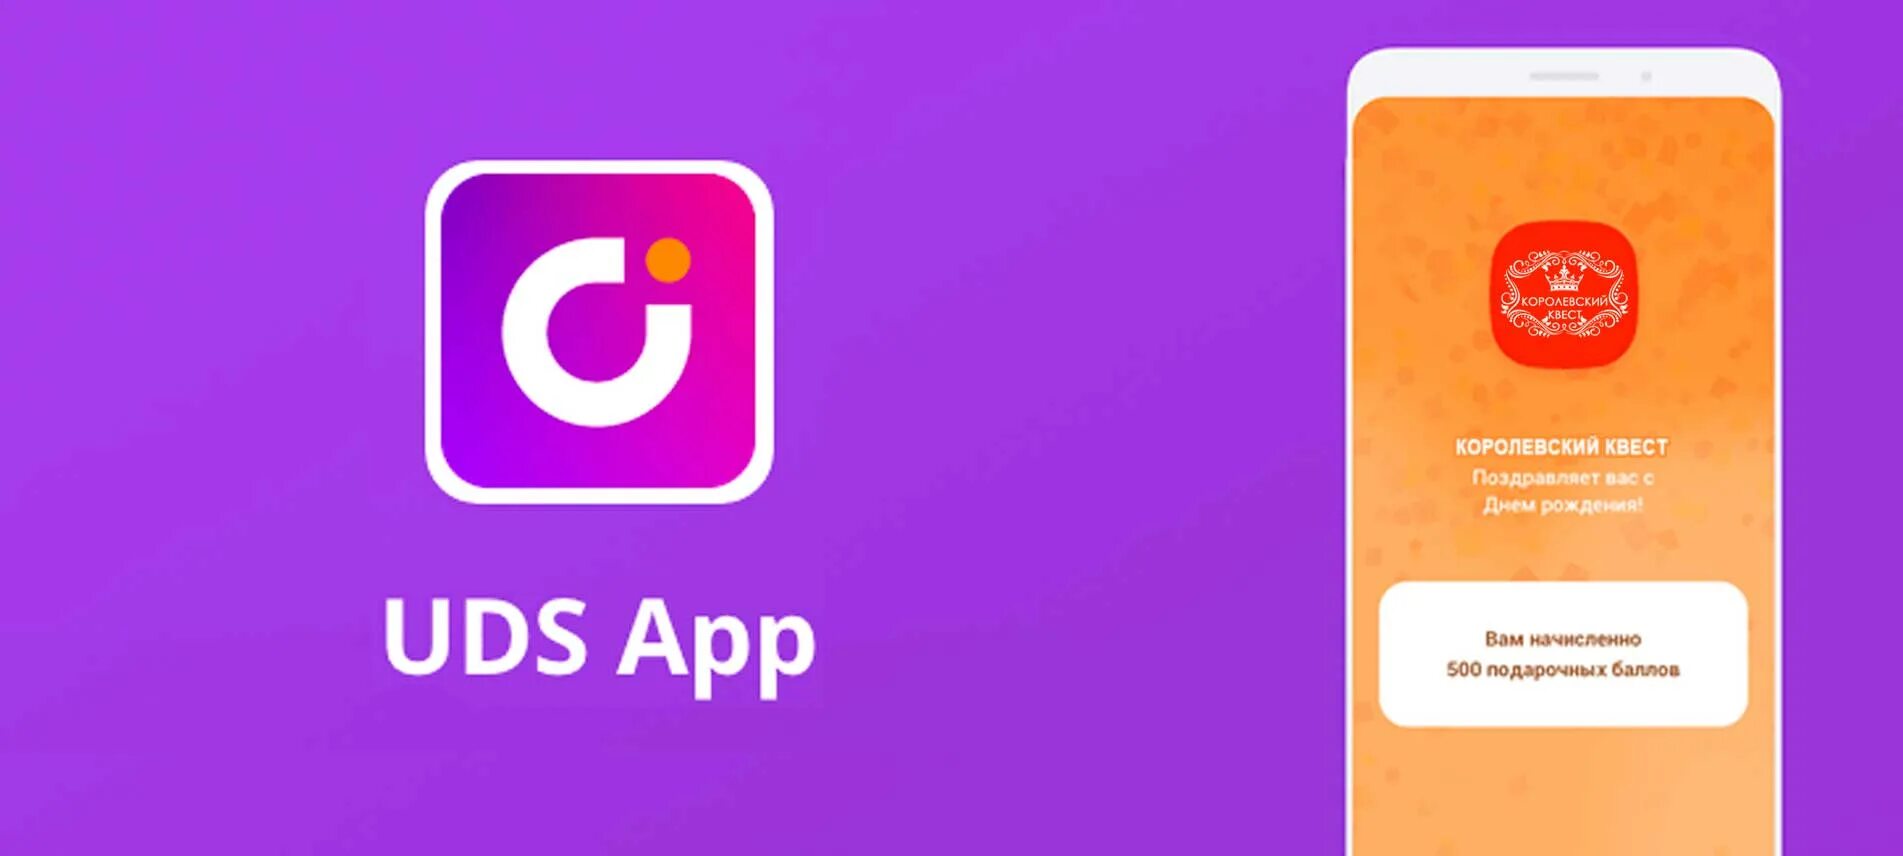 UDS. UDS логотип. ЮДС приложение. Мобильное приложение UDS. Https uds app